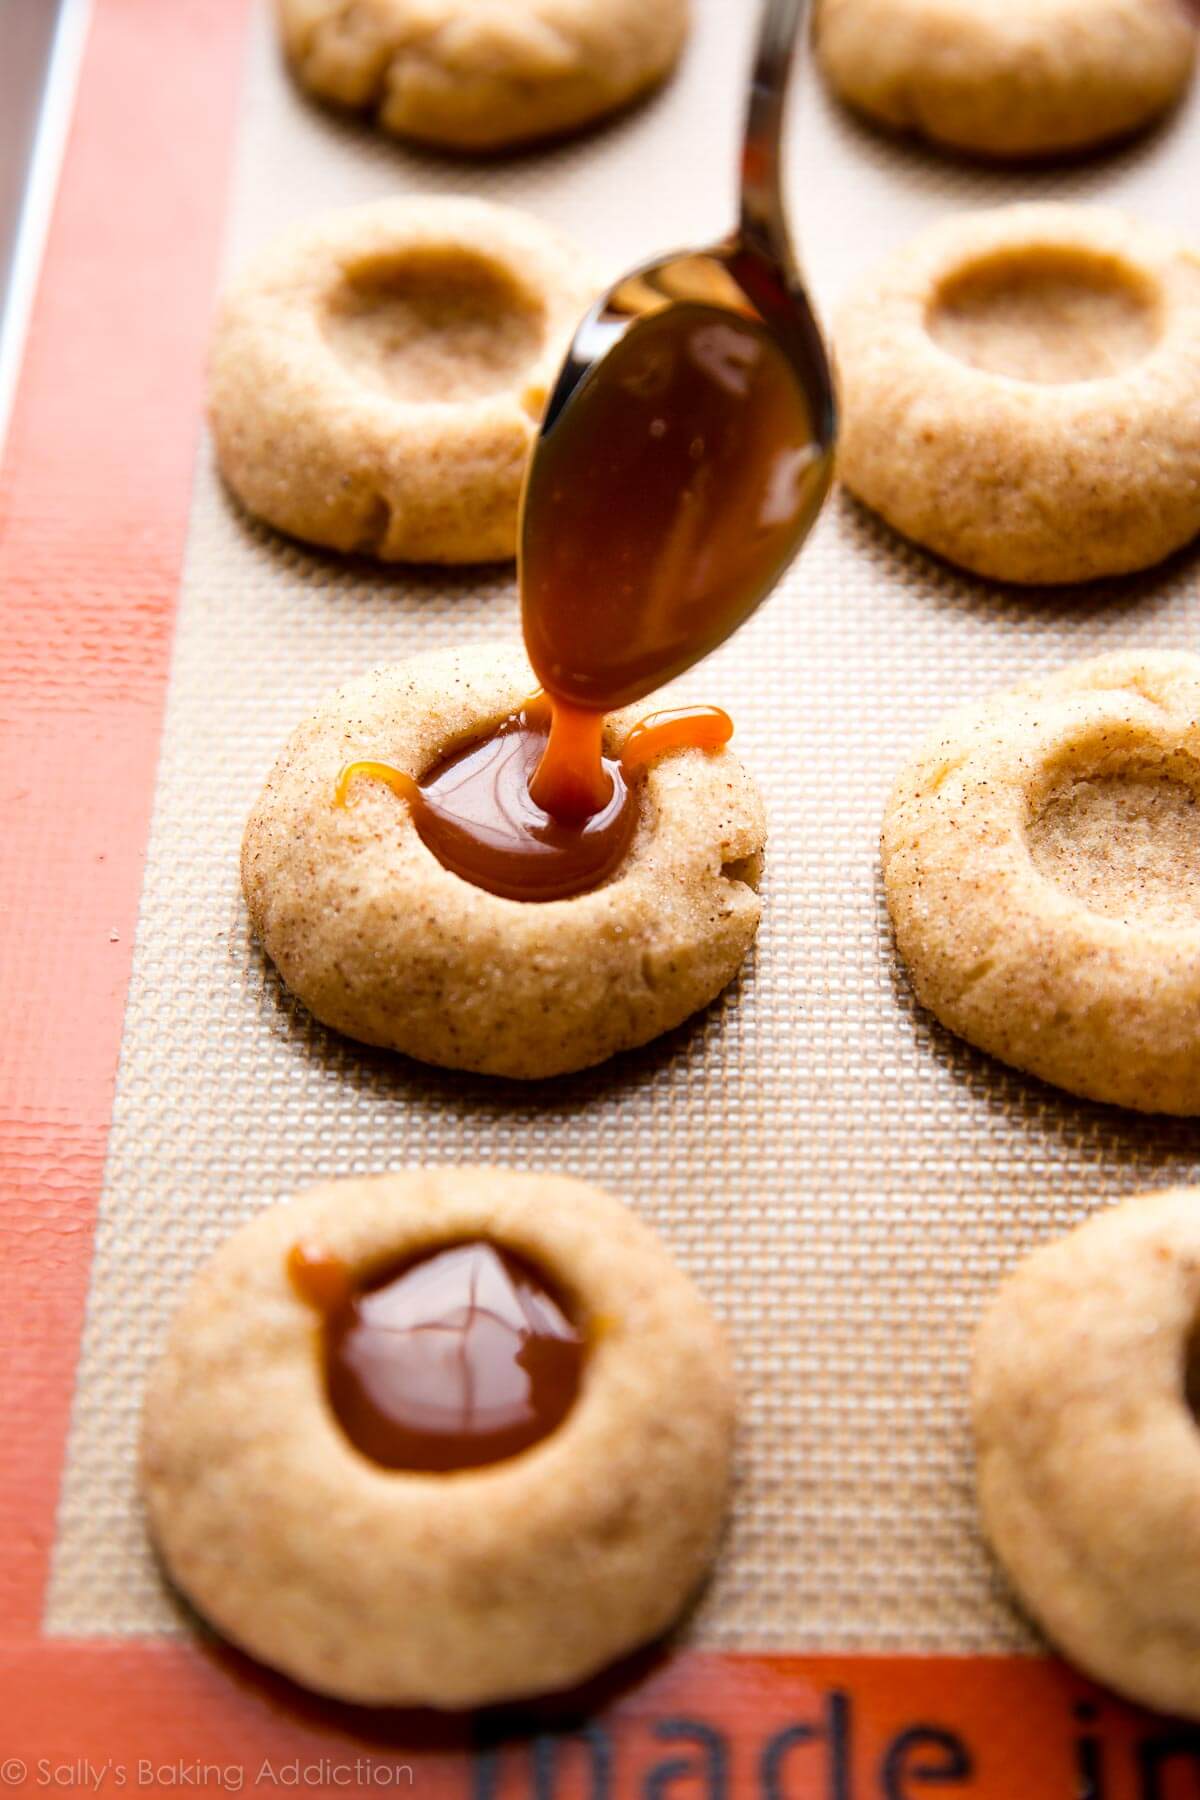 Biscuits à l'empreinte de pomme aux épices remplis de caramel fait maison! Ces délicieux biscuits d'automne sont complètement irrésistibles et si simples à préparer! Recette sur sallysbakingaddiction.com